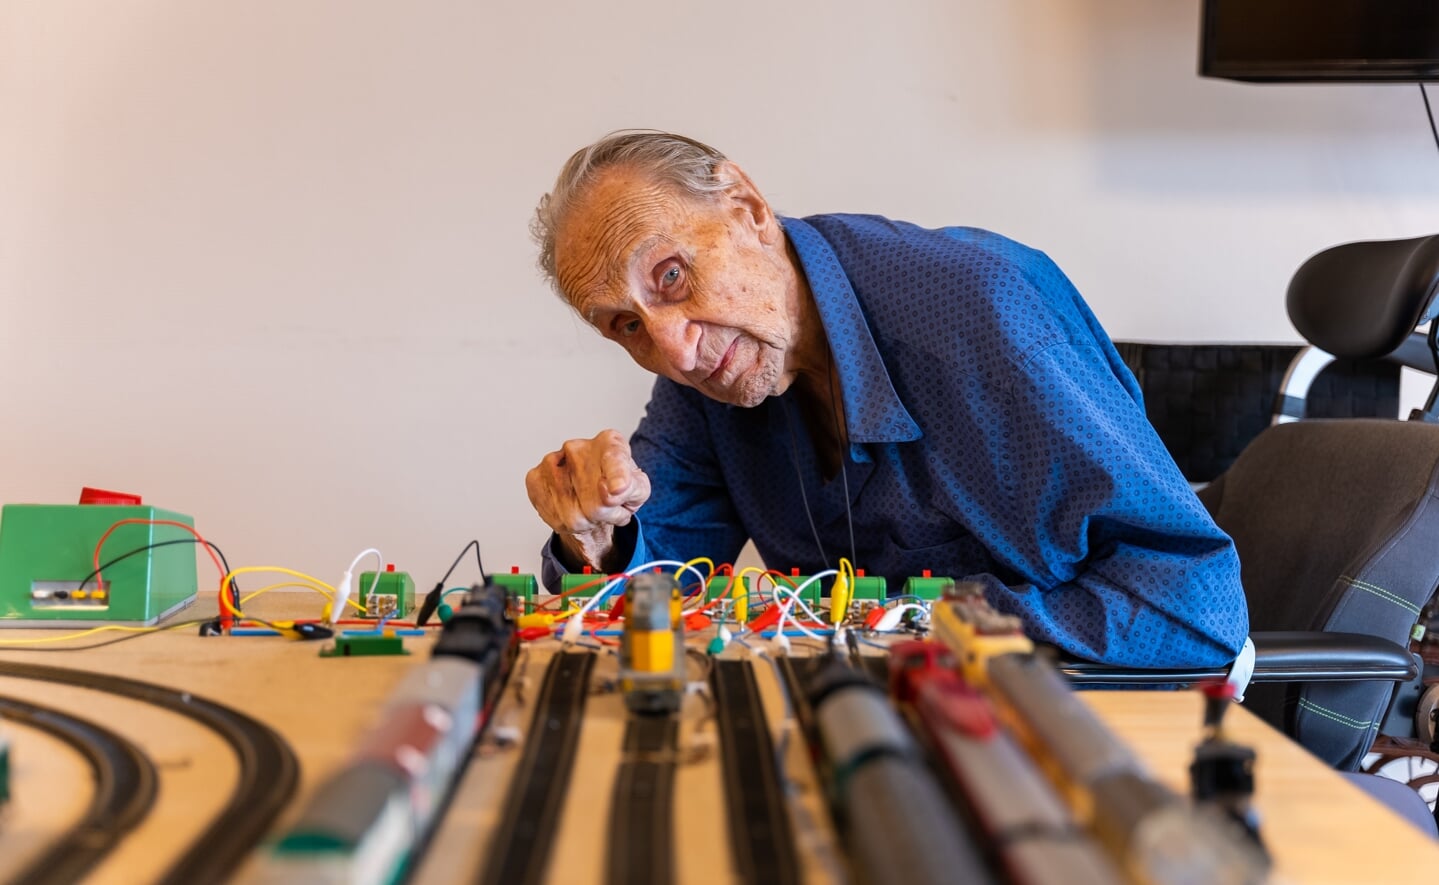 Ben Mols (94) is al zestig jaar verzot op modeltreinen. Om meer leven in de brouwerij te brengen in wijkhuis Simeonshof, heeft hij met zoon Hans gewerkt aan een modelspoorplatform zodat de jeugd ermee kan spelen.